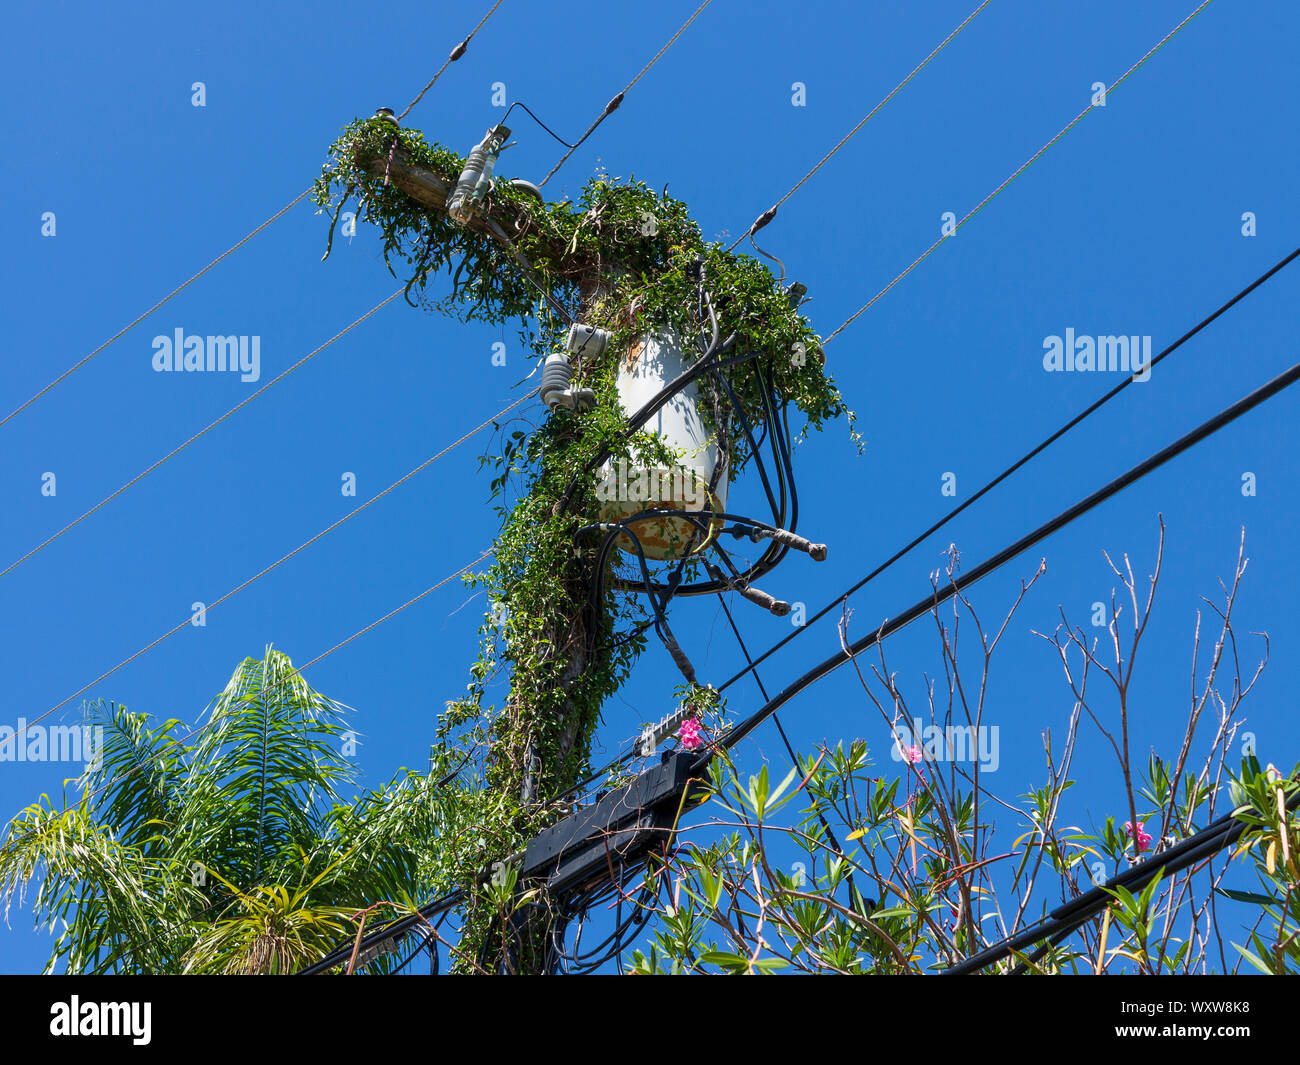 Las líneas de transmisión de energía eléctrica y postes de electricidad cubierto de plantas trepadoras contra un cielo azul en las Bermudas Foto de stock